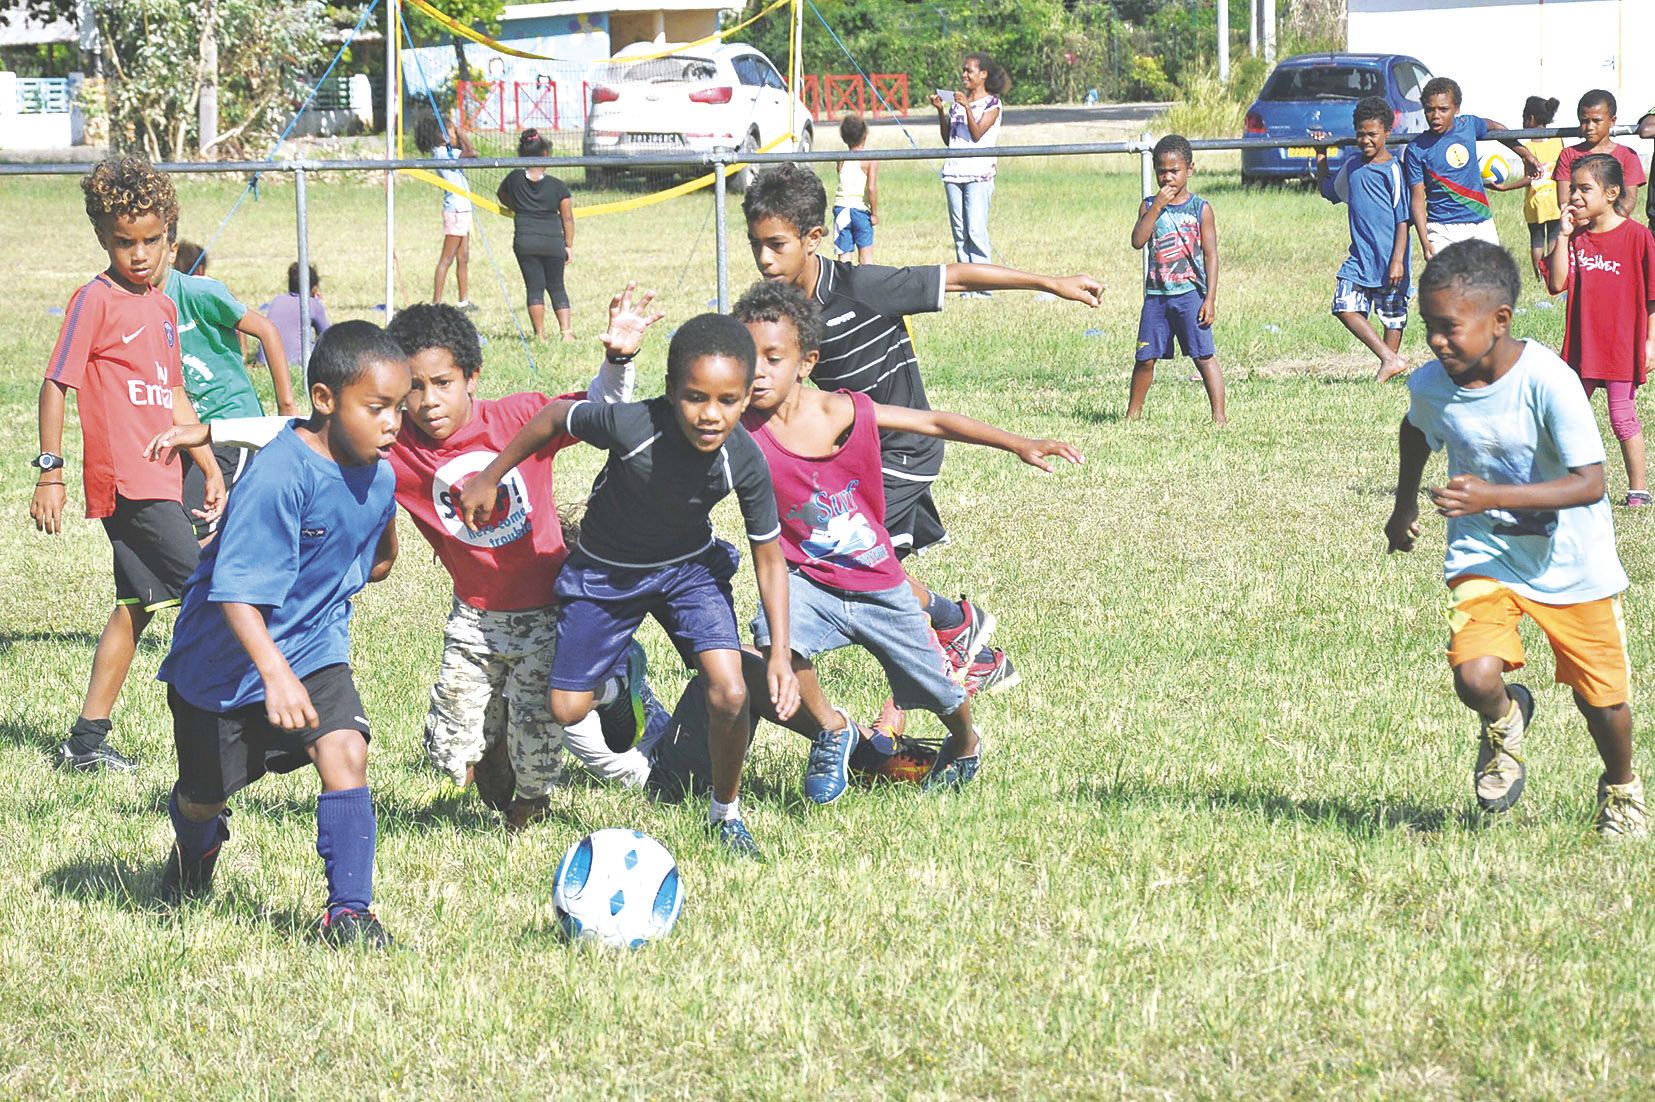 Dans la catégorie des 7/9 ans en football, les équipes de Mavou et de l’Etoile de Poum, au cours de cette rencontre, se sont séparées sur un score de 2 à 2. Respectivement classées première et seconde, elles se sont qualifiées pour les finales du district